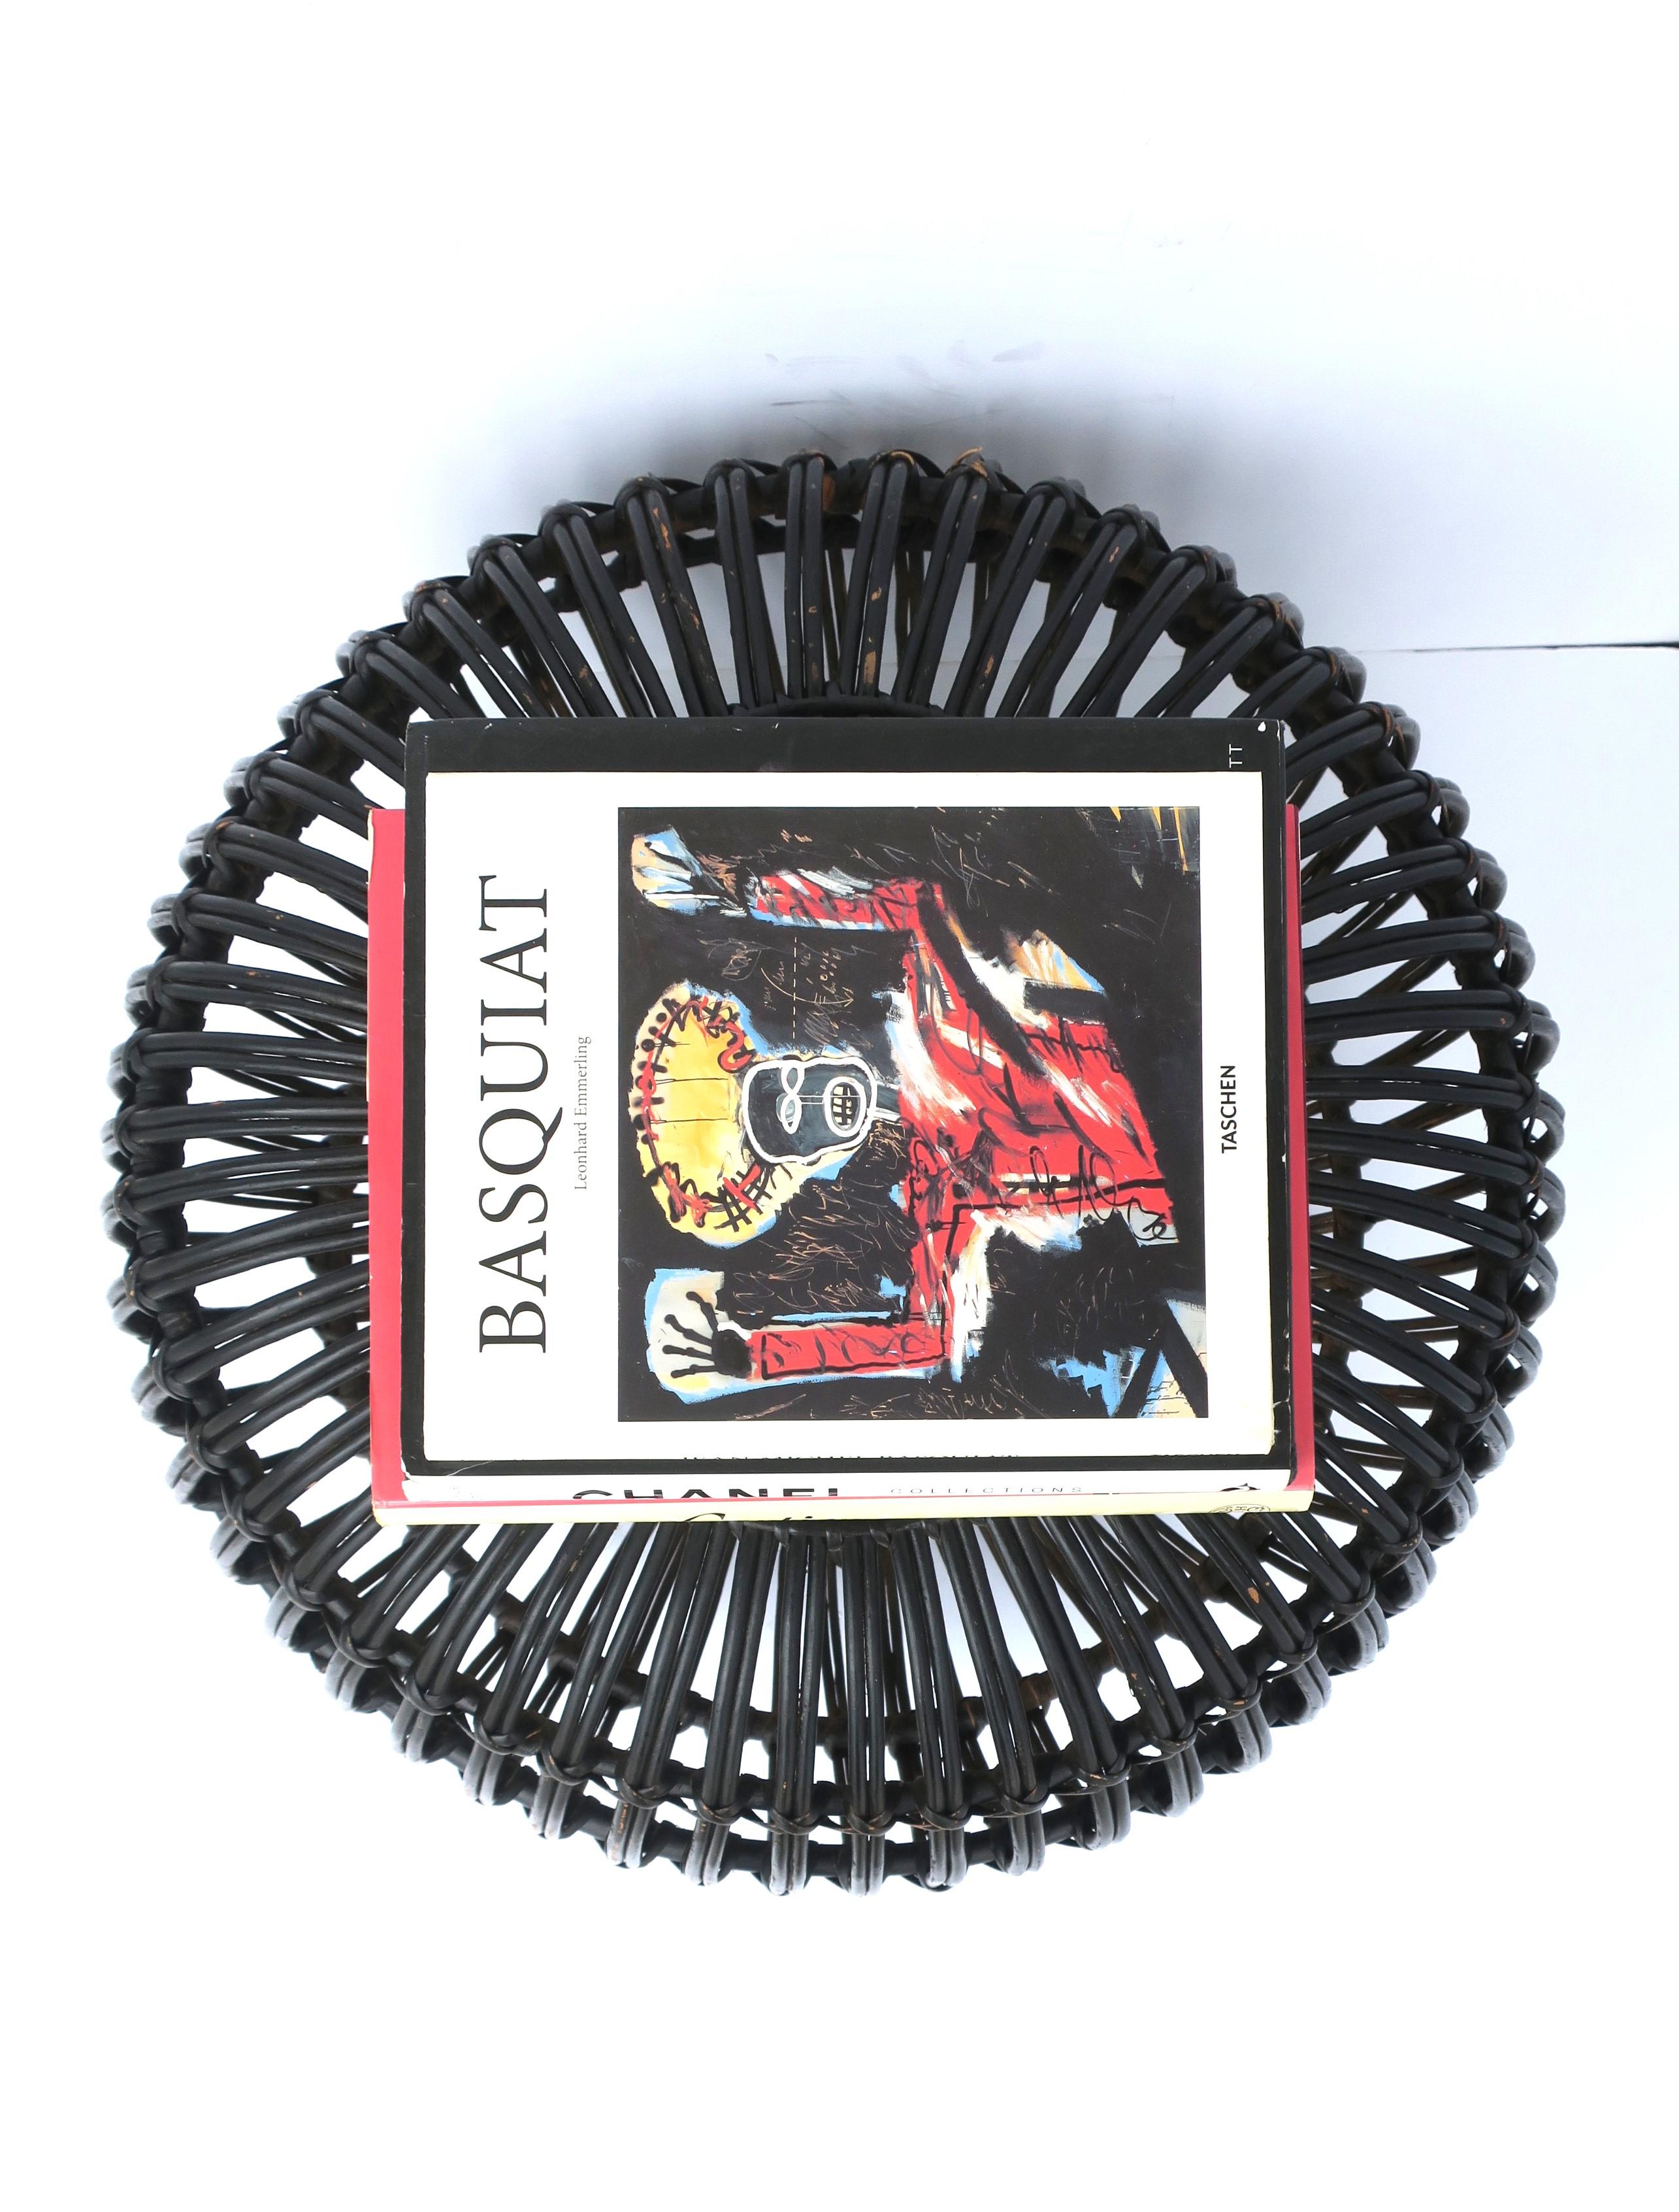  Black Wicker Rattan Ottoman Pouf Attributed to Franco Albini  For Sale 2